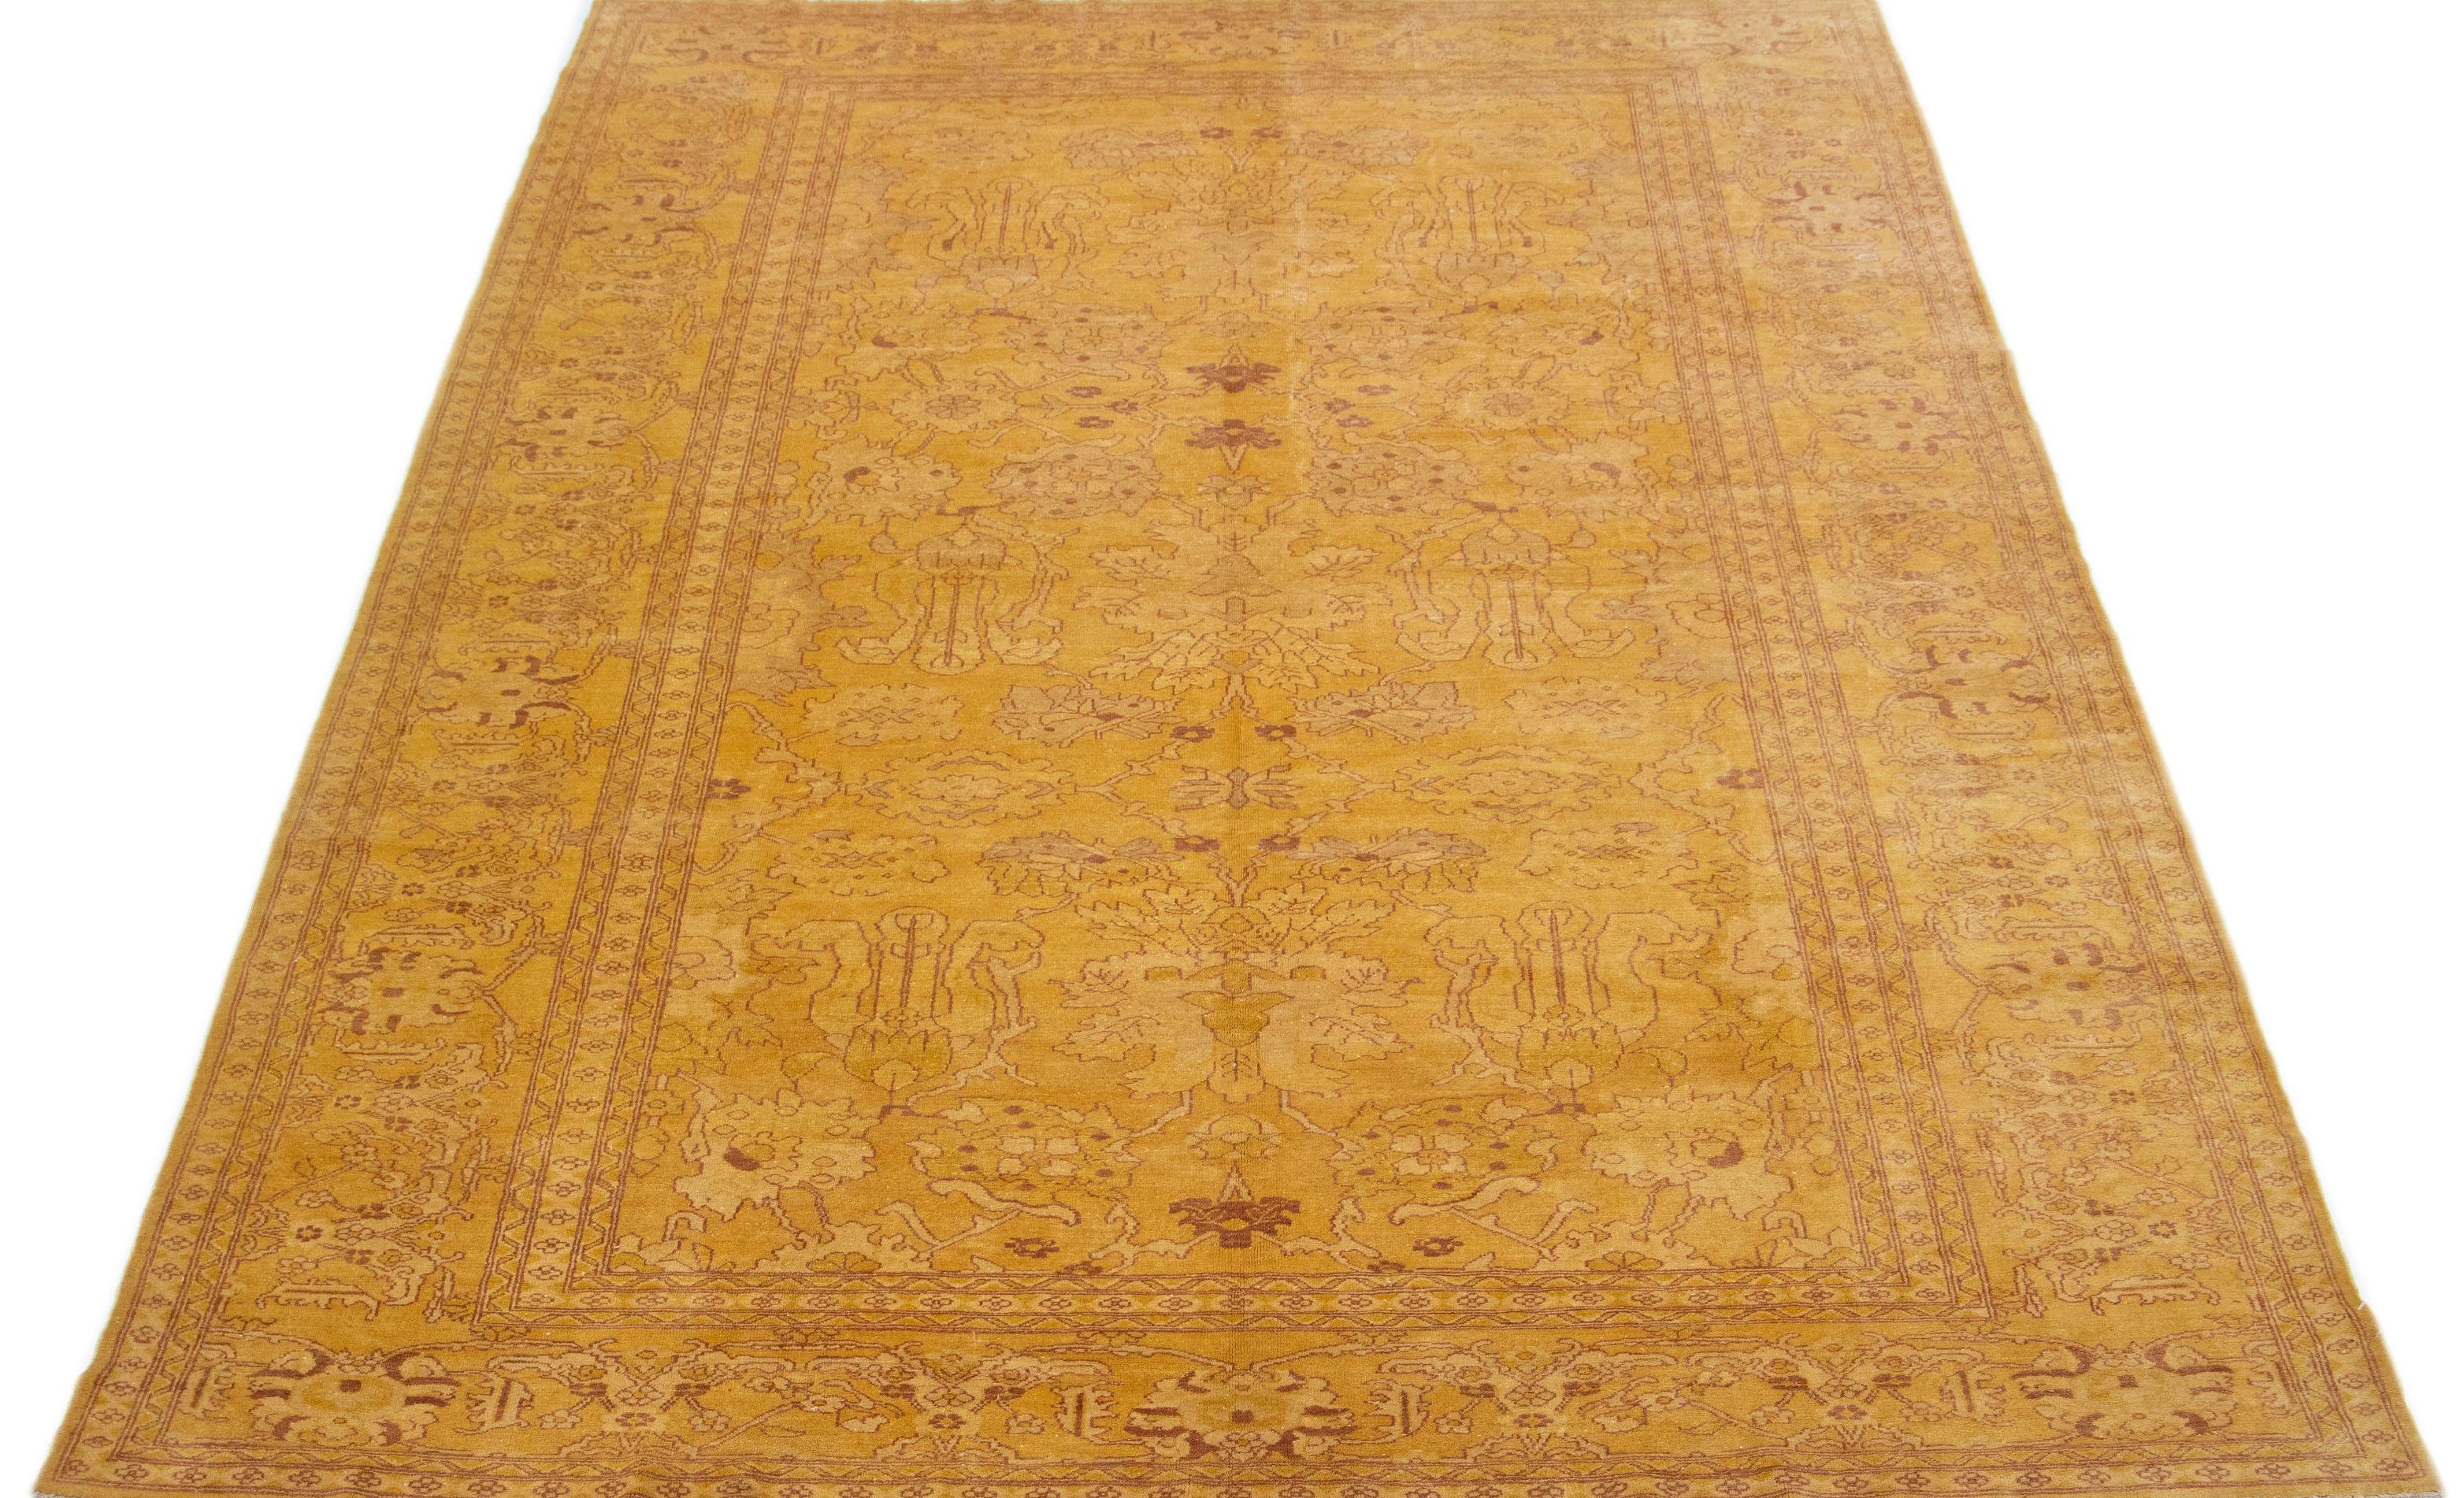 Ce tapis en laine noué à la main présente un magnifique design indien vintage, avec un champ de couleur verge d'or accentué par de superbes accents bruns dans un élégant motif all-over.

Ce tapis mesure 9' x 13'.